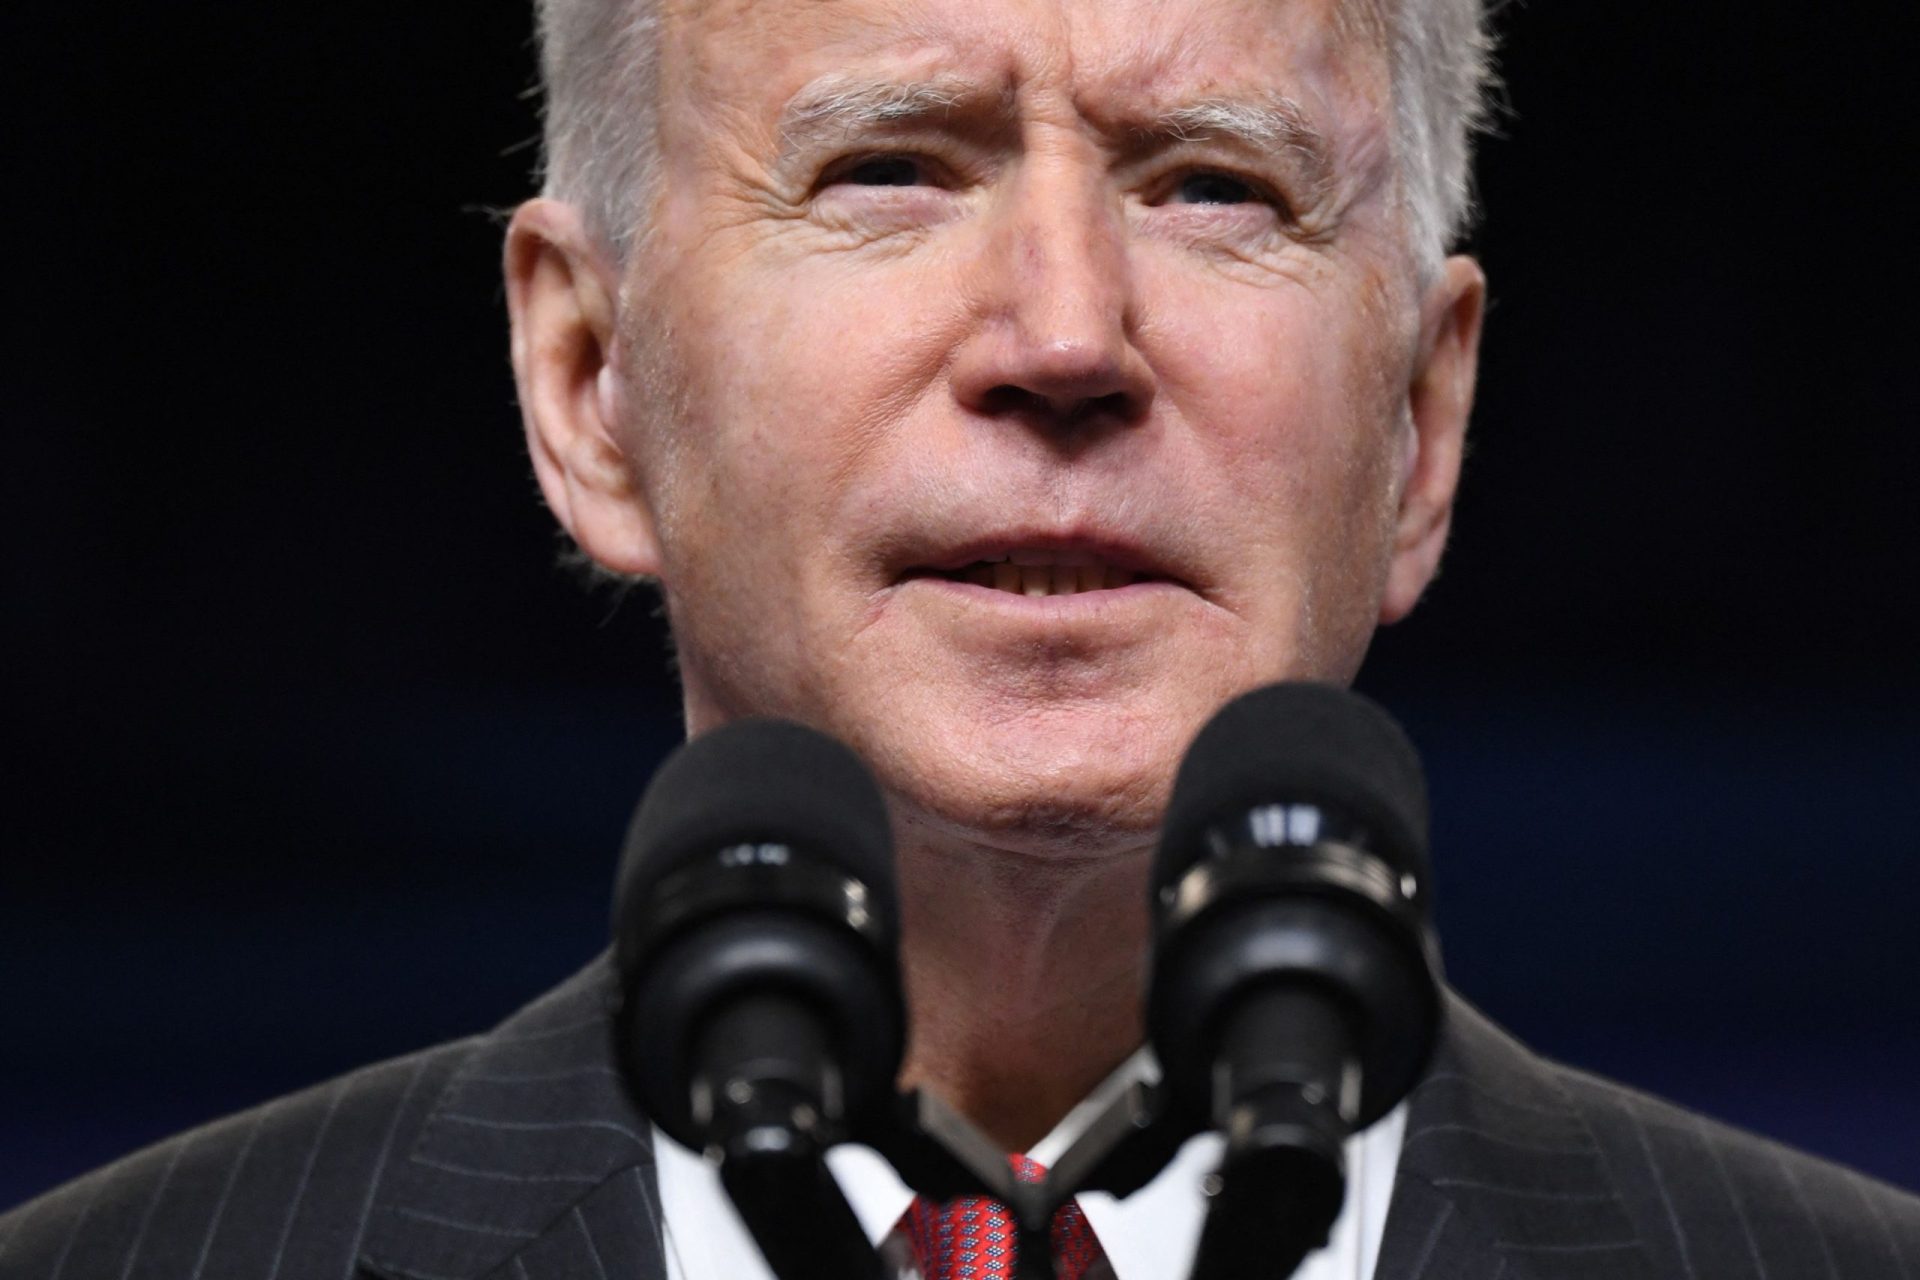 Presidente da China deseja uma “rápida recuperação” a Joe Biden